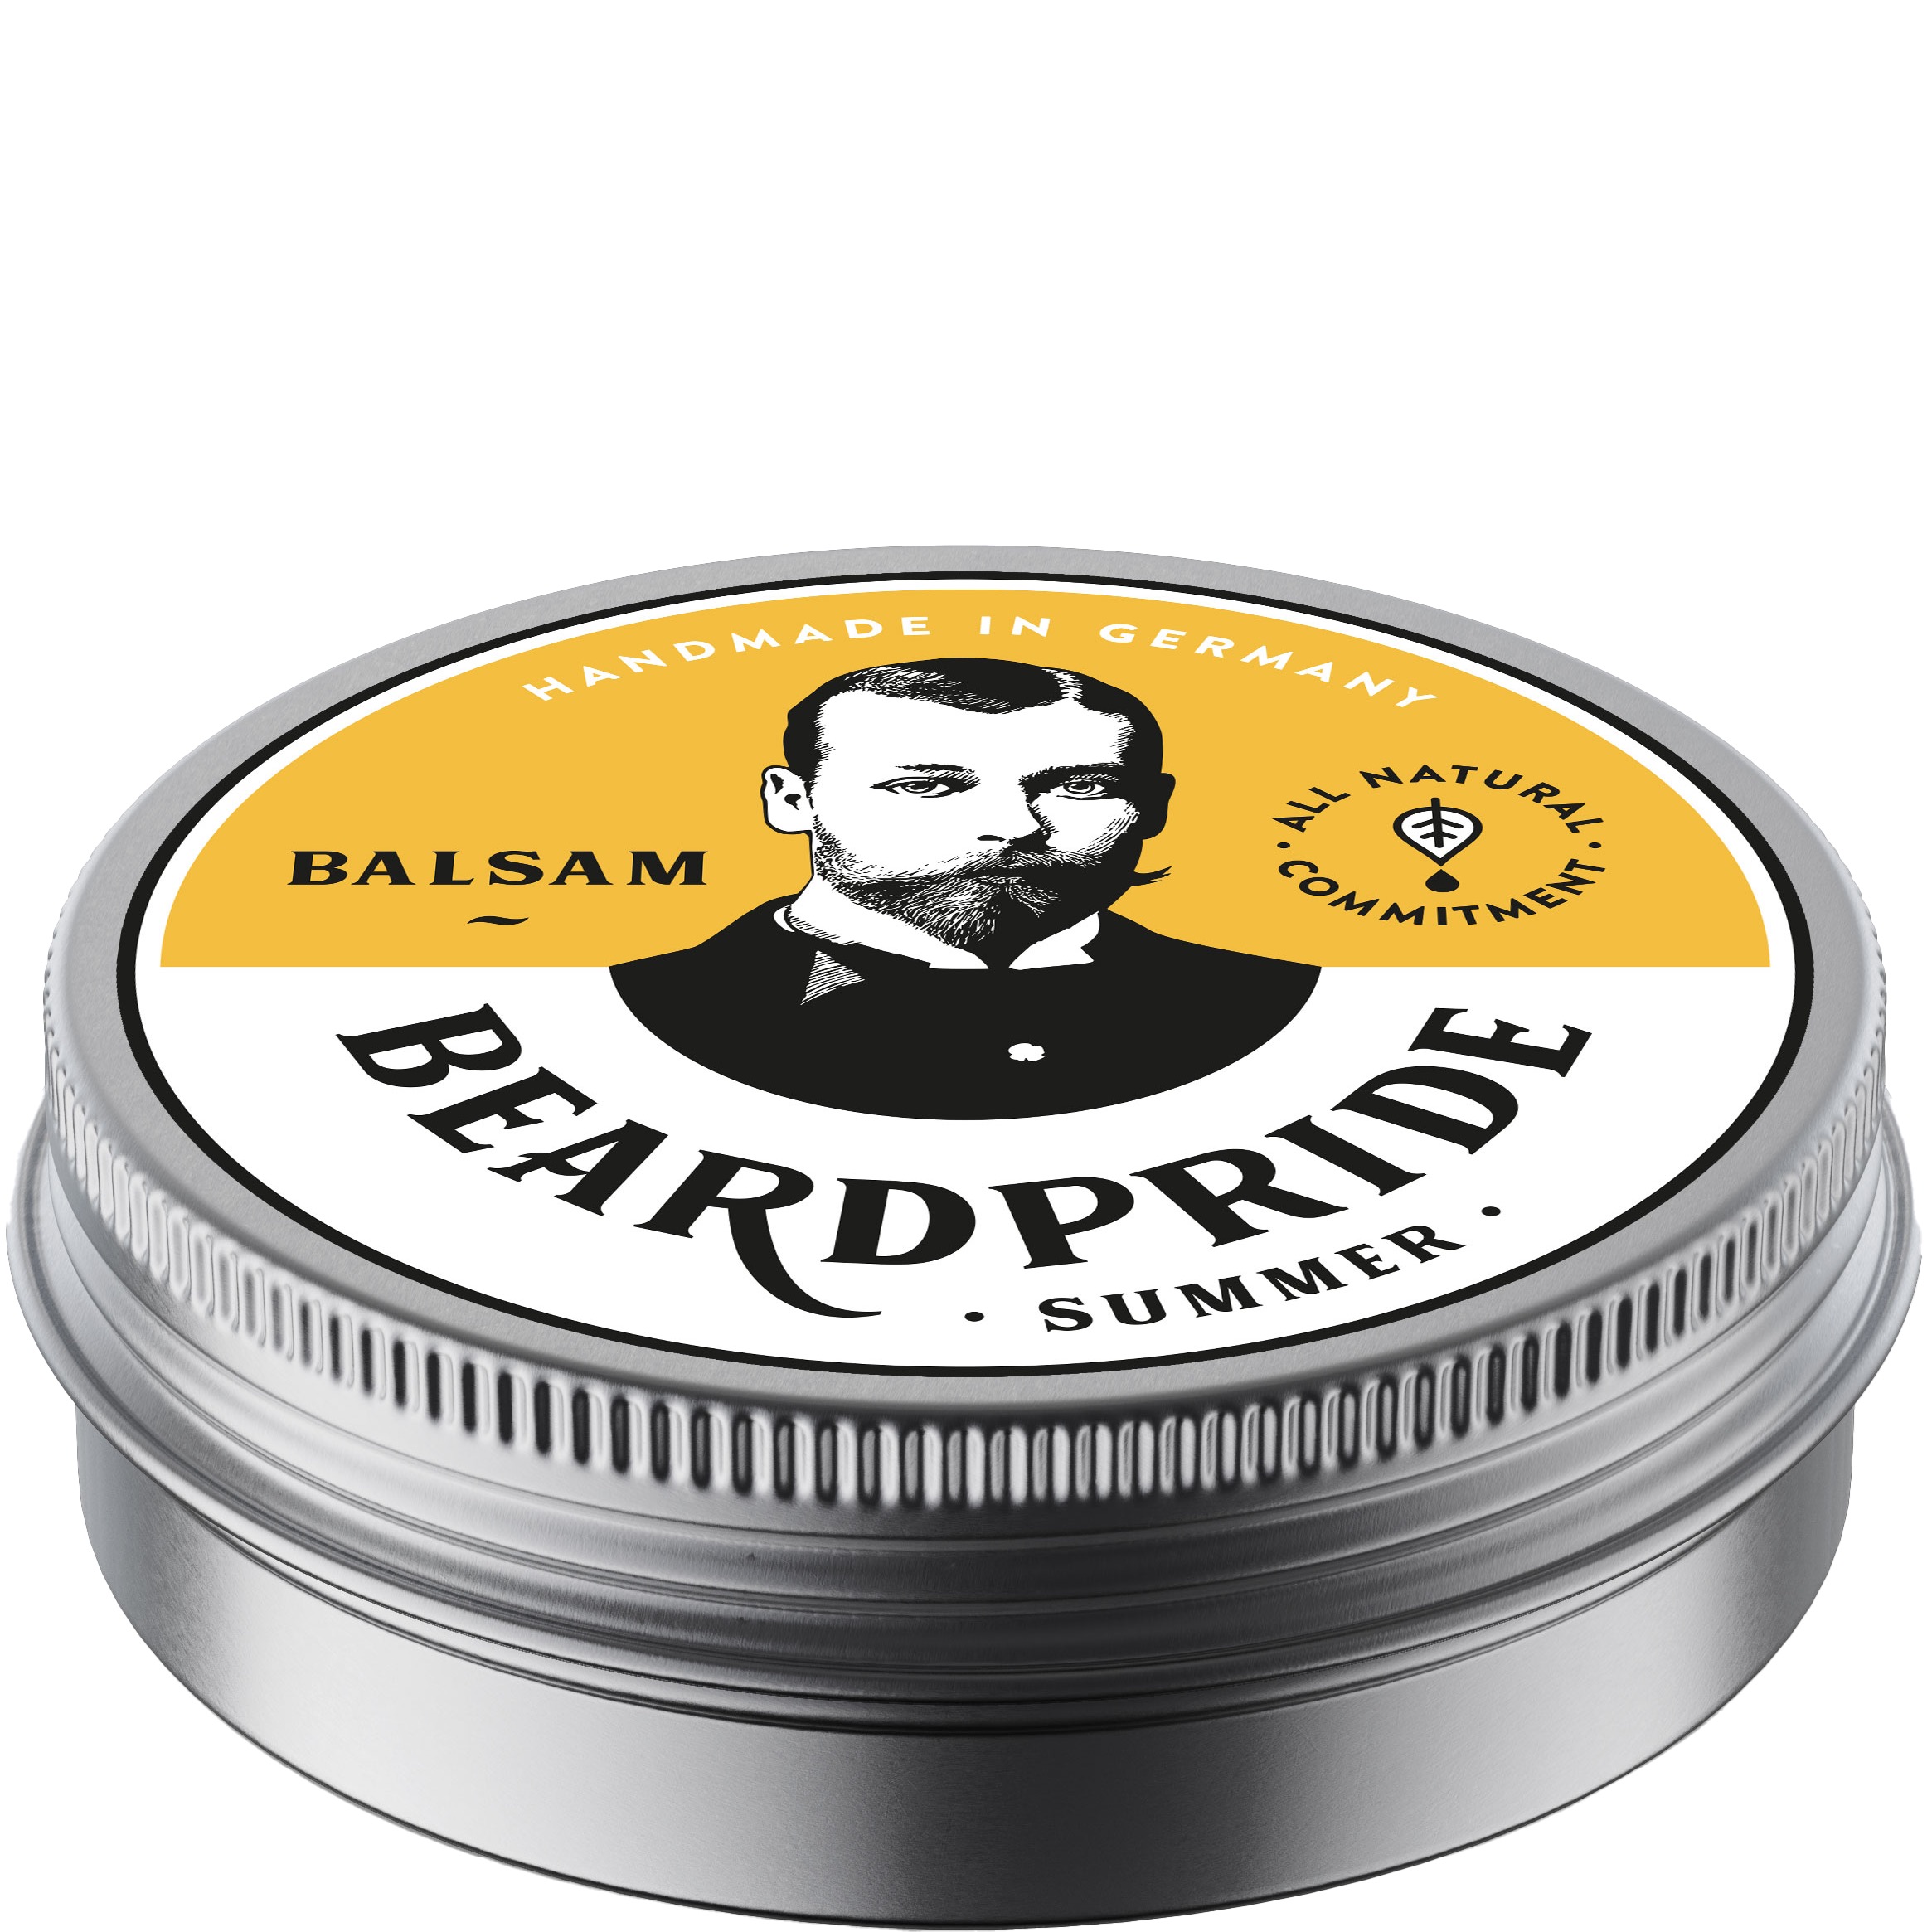 Beardpride Balsam Summer 55 gram - 1.1 - BP-310317